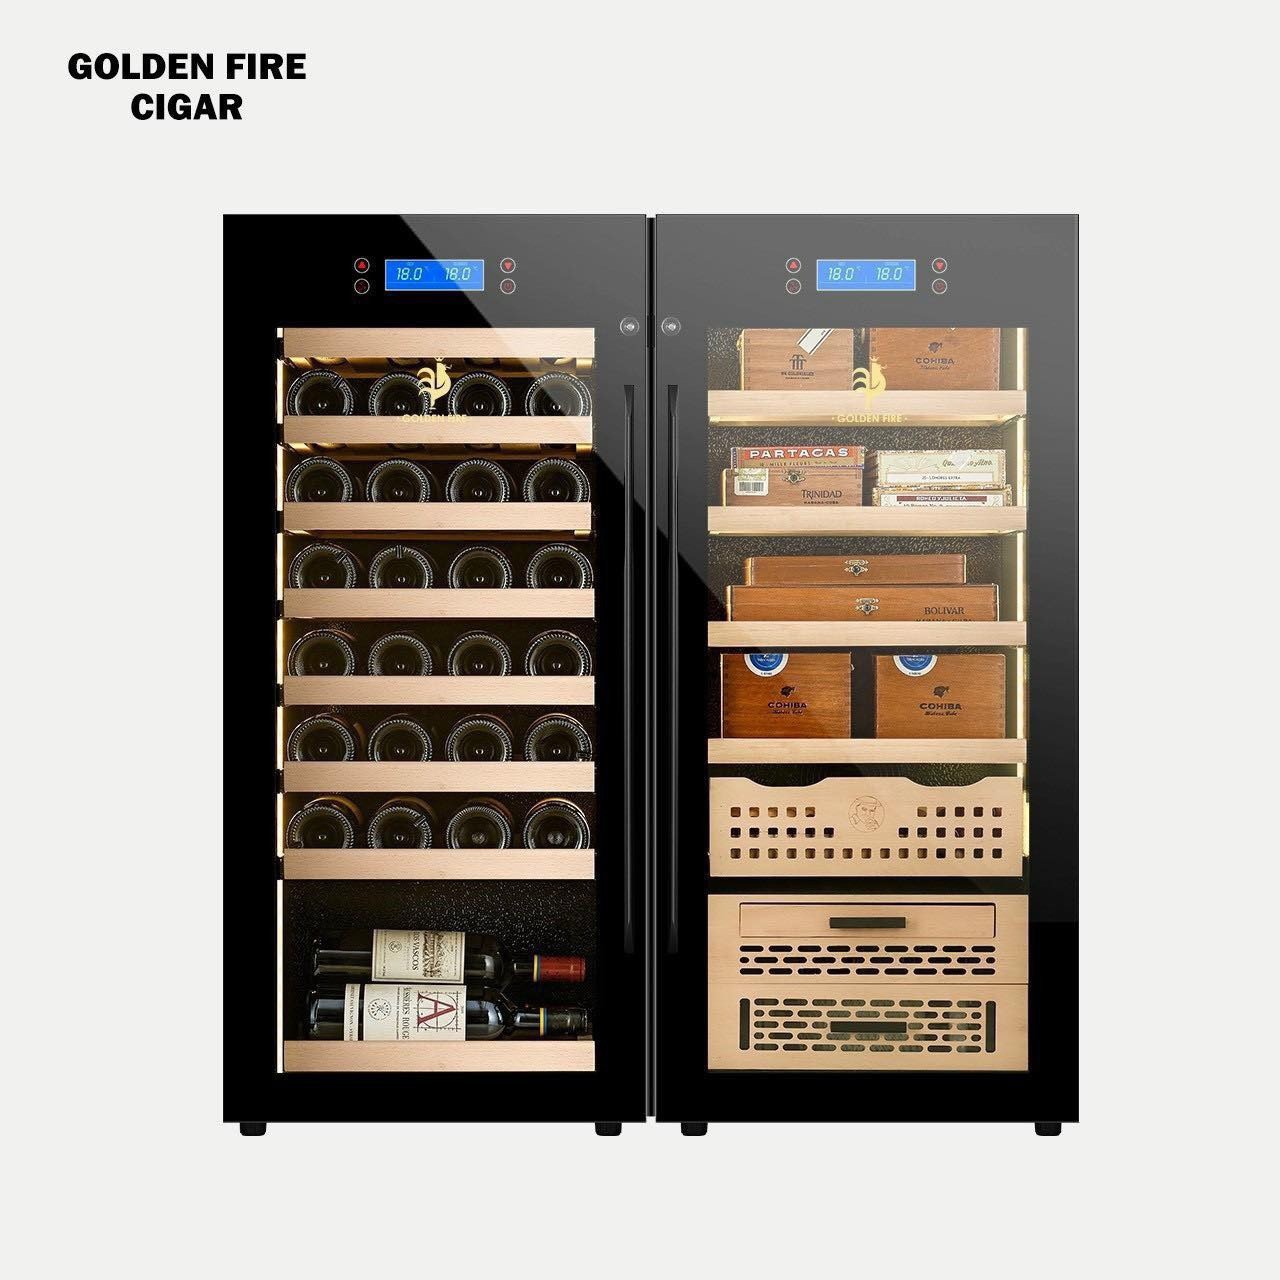 Tủ rượu vang và cigar Golden Fire GF-298